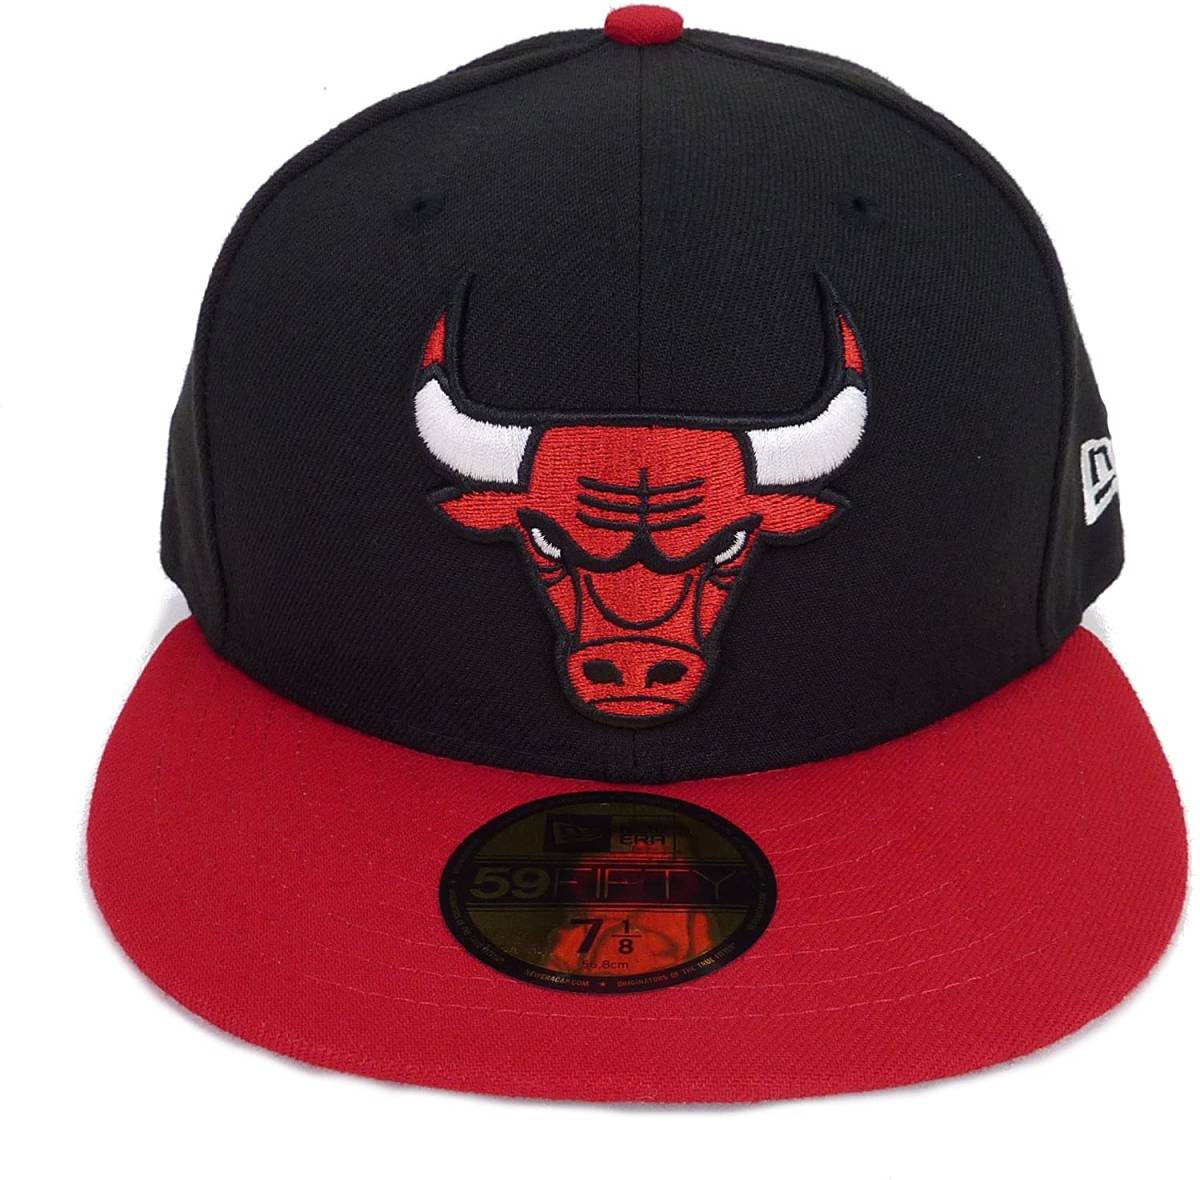 New Era ニューエラ NBA Chicago Bulls シカゴ ブルズ ベースボールキャップ (ブラック/レッド) (7 1/8 56.8cm) [並行輸入品]